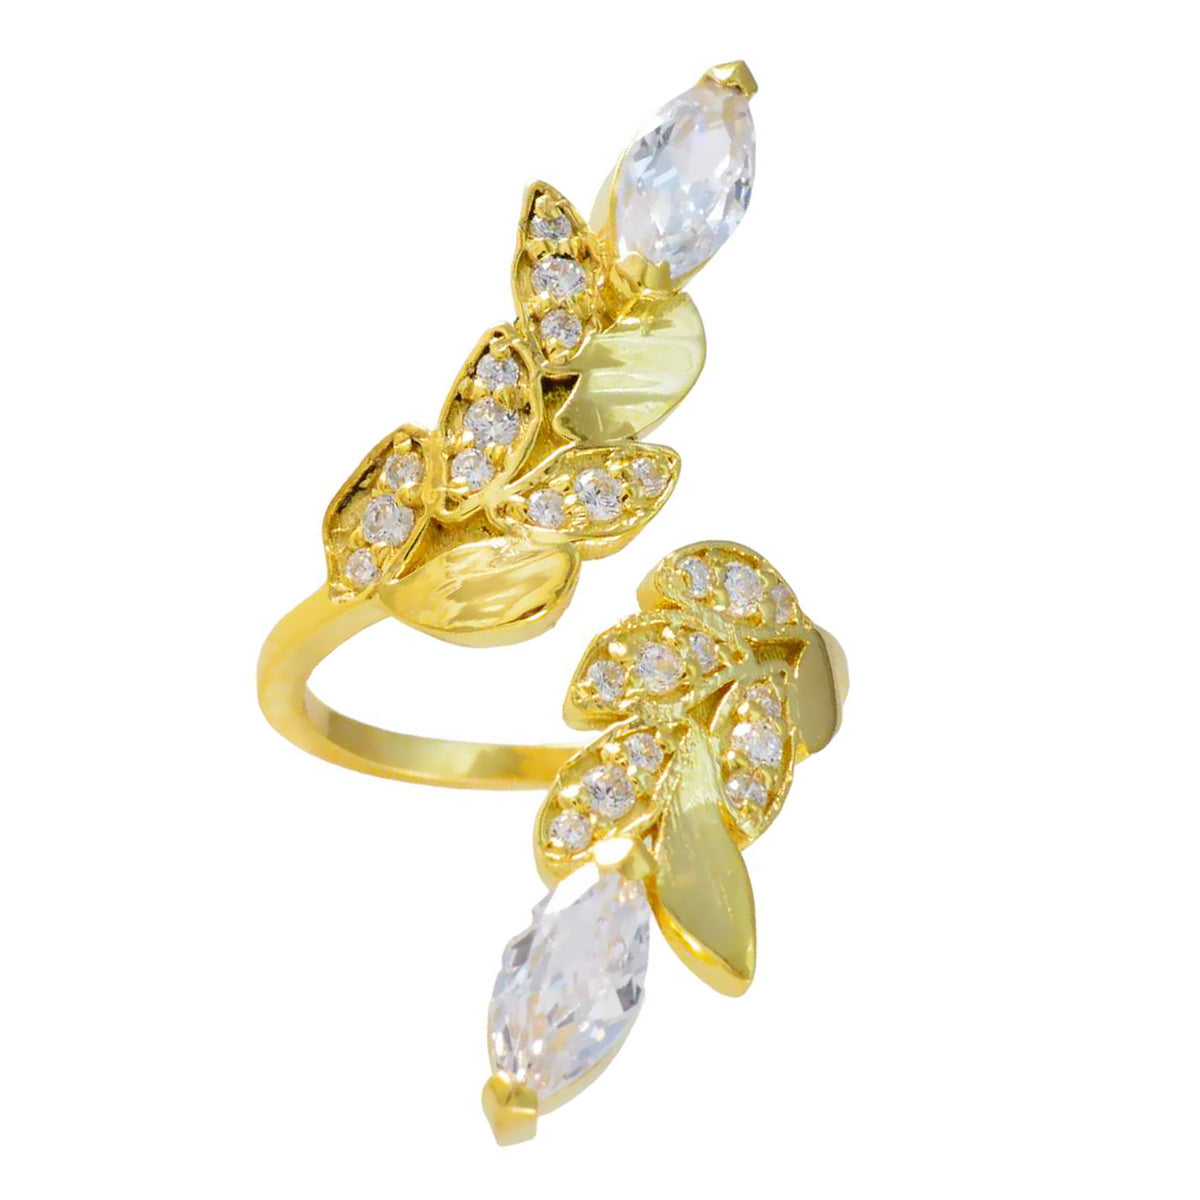 riyo bulk silverring med gul guldplätering vit cz sten markis form uttagsinställning snygg smycke julring